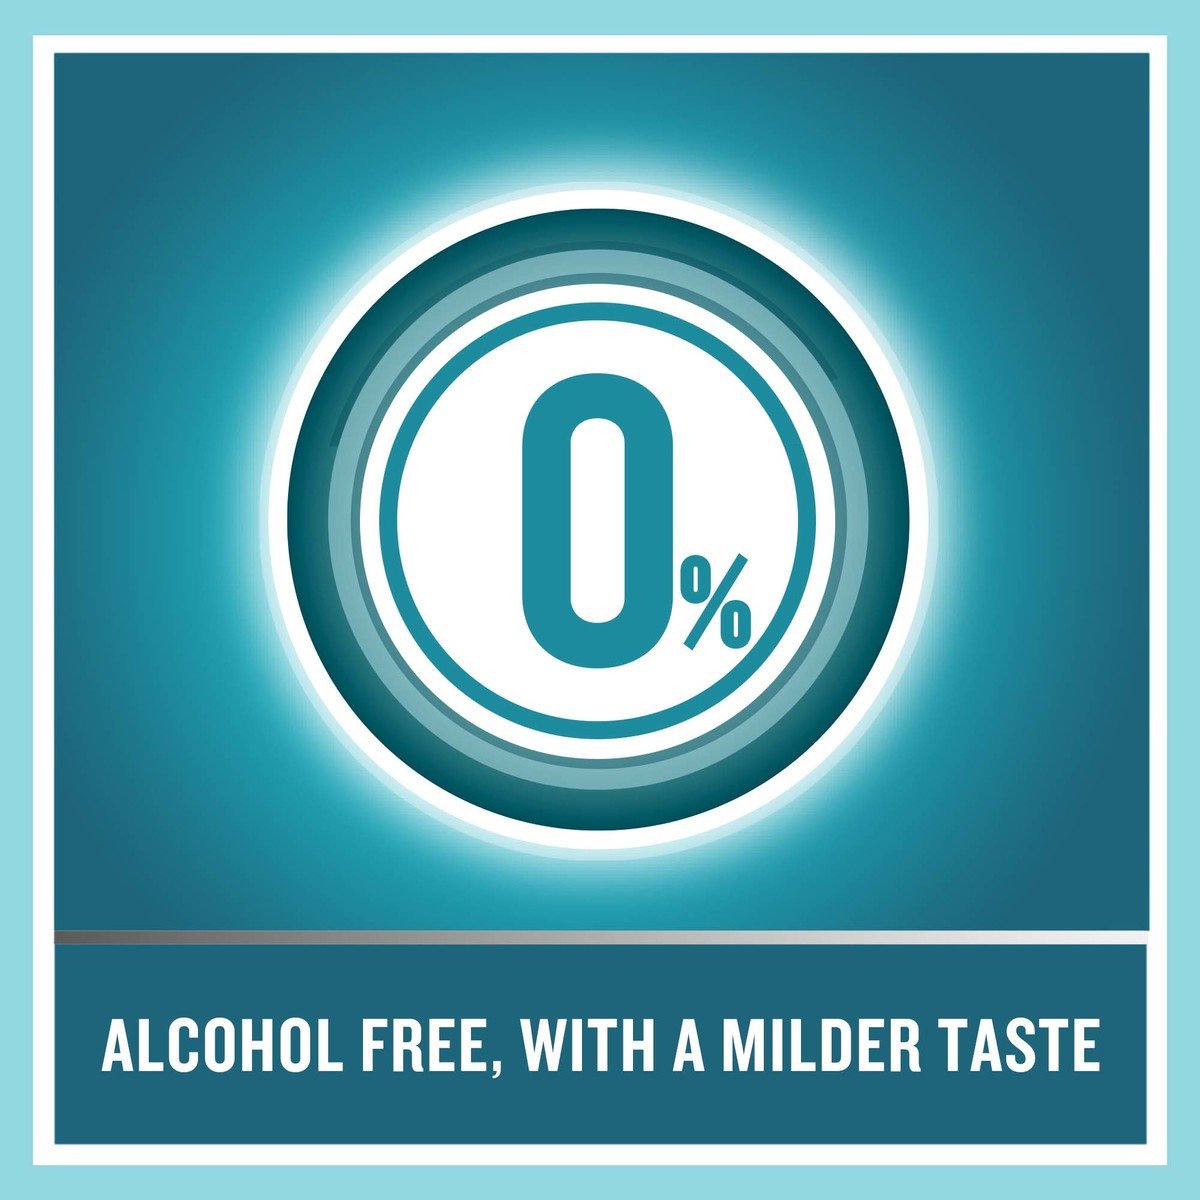 Listerine Mouthwash Zero Alcohol Mild Mint 500 ml